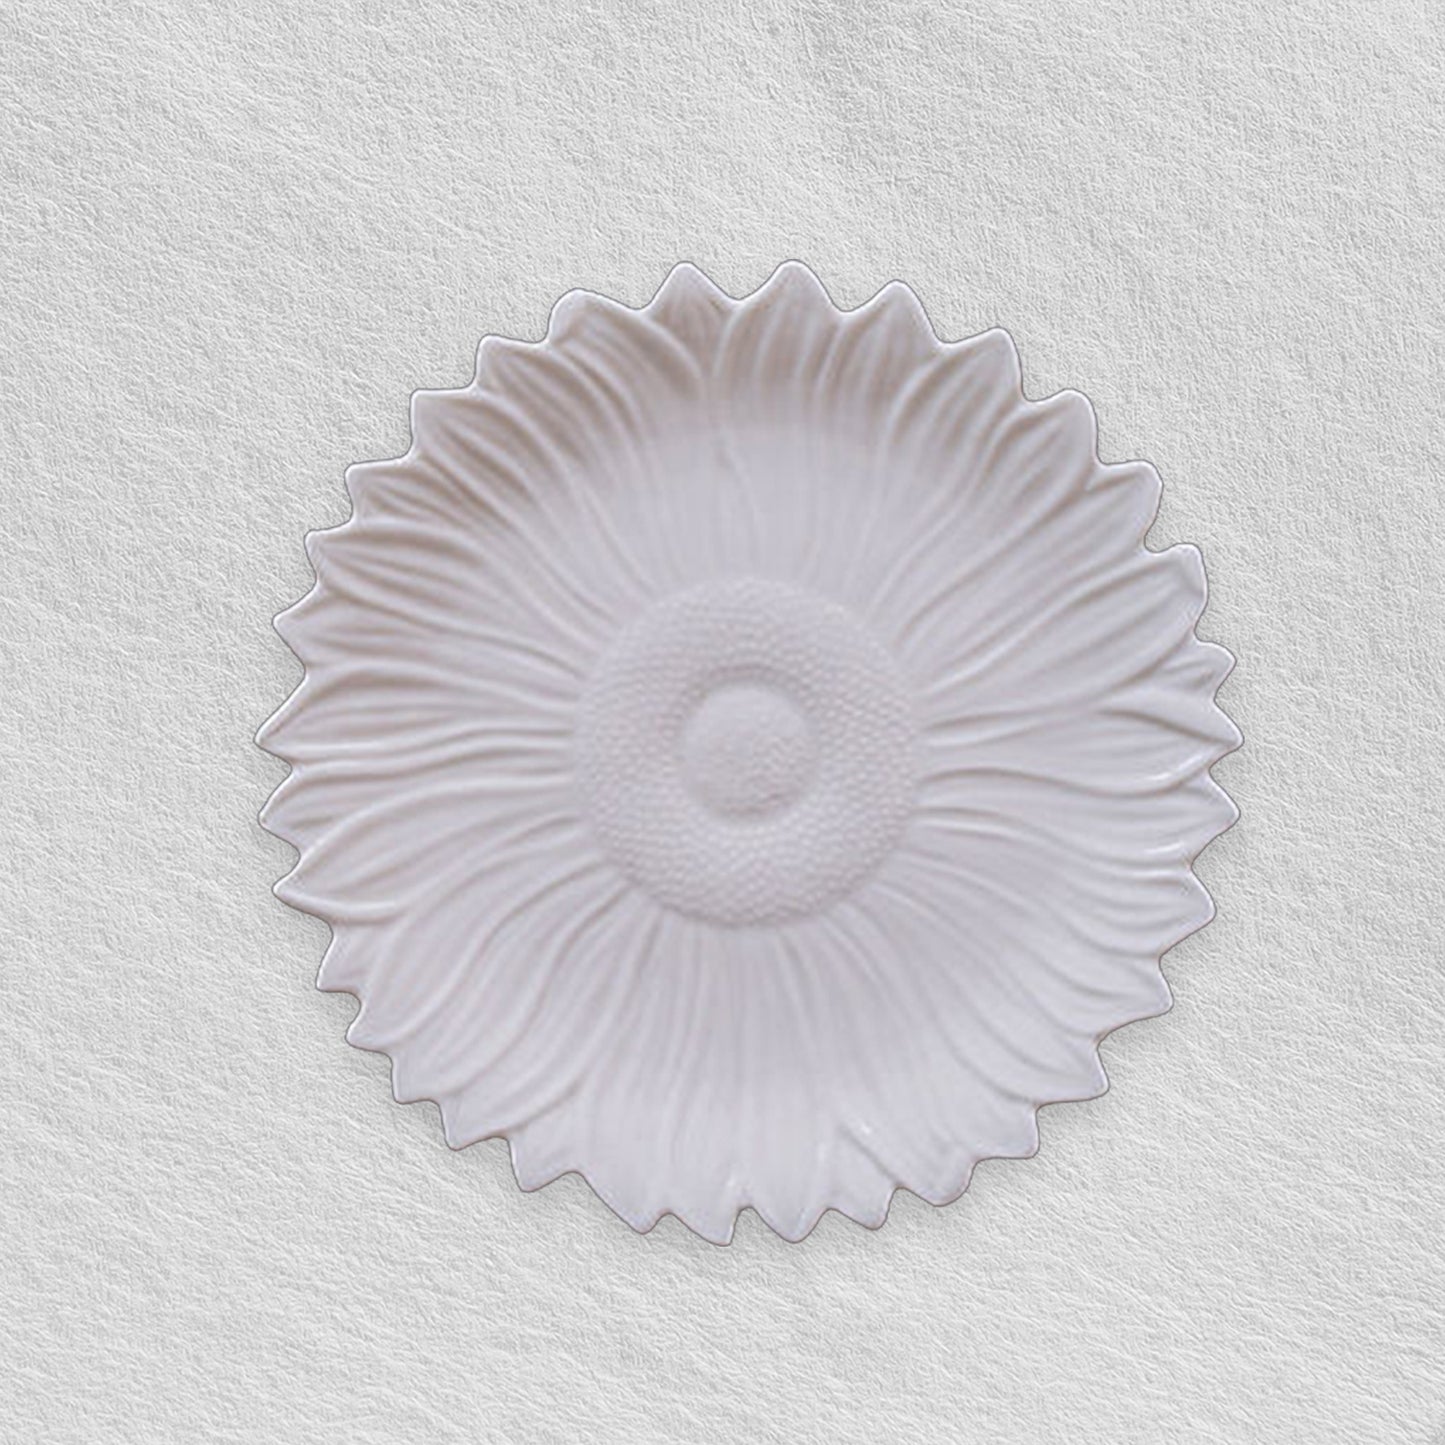 Sunflower White Embossed Plates